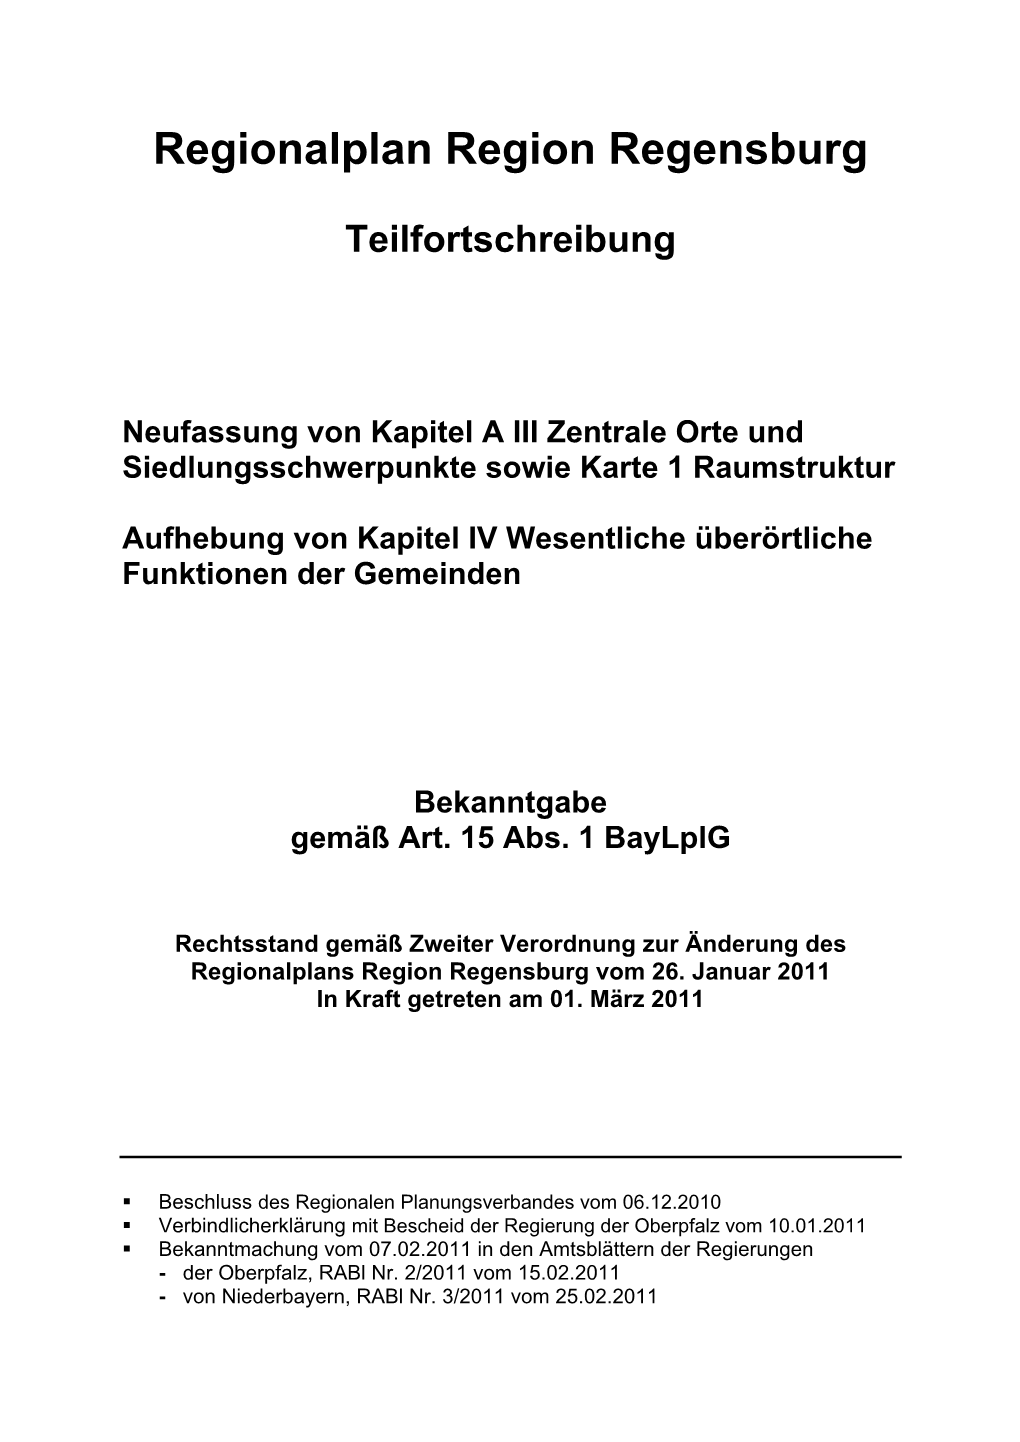 Regionaler Planungsverband Regensburg